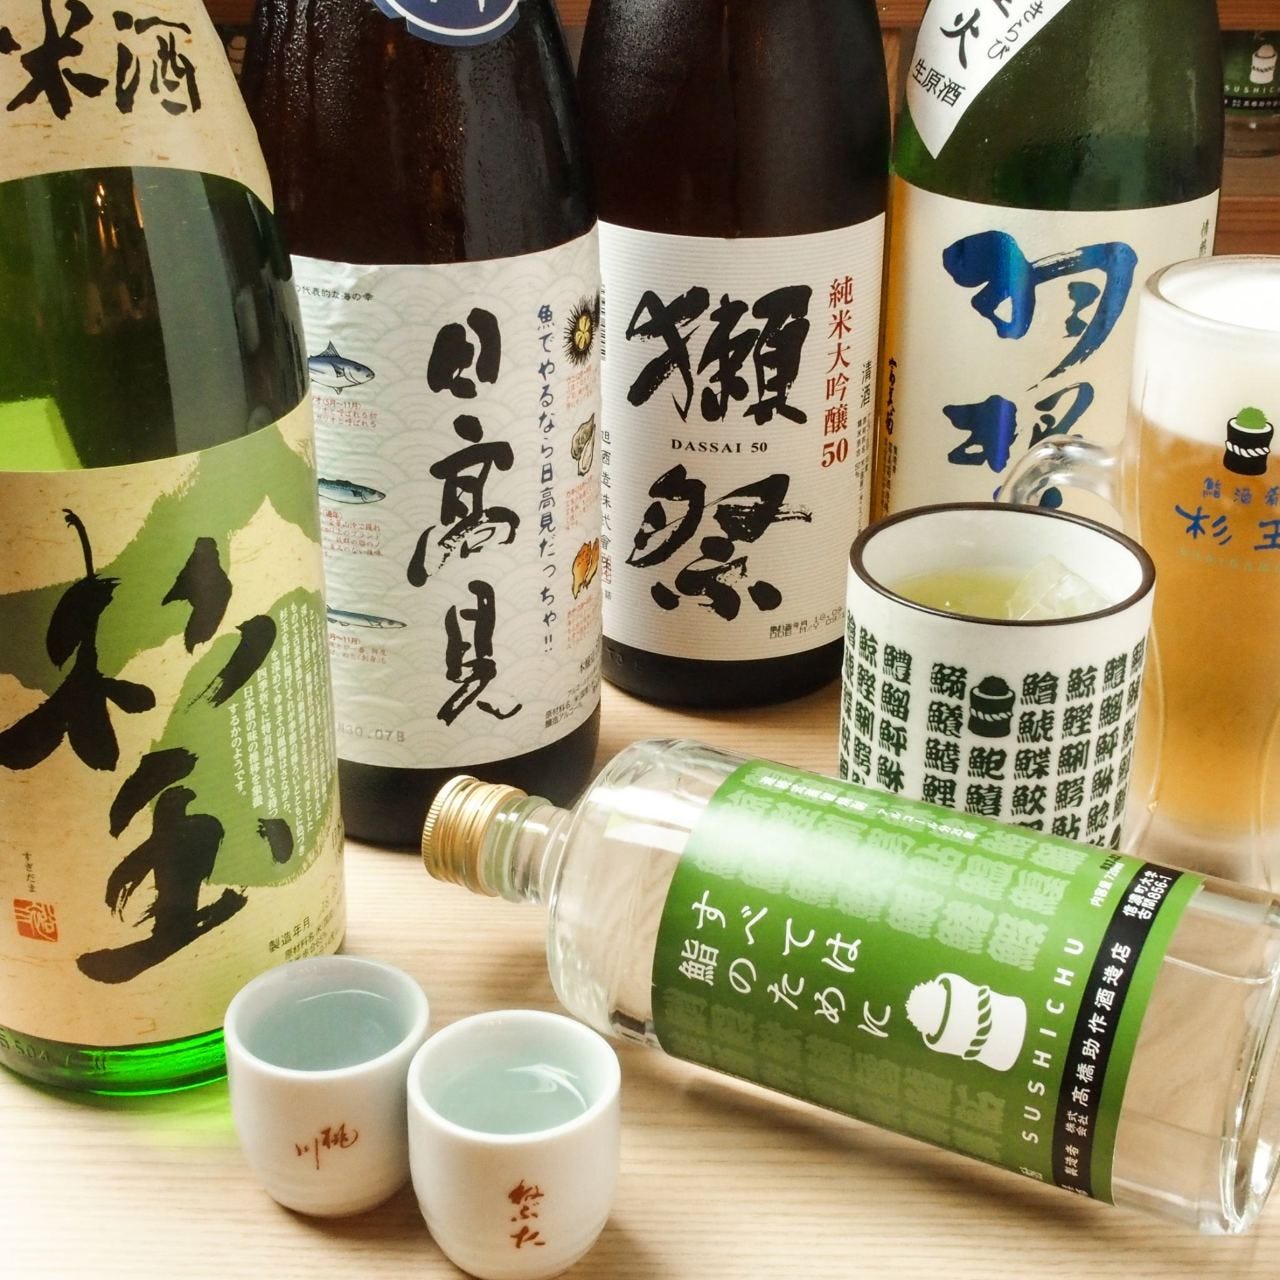 鮨・酒・肴 杉玉 三ノ輪